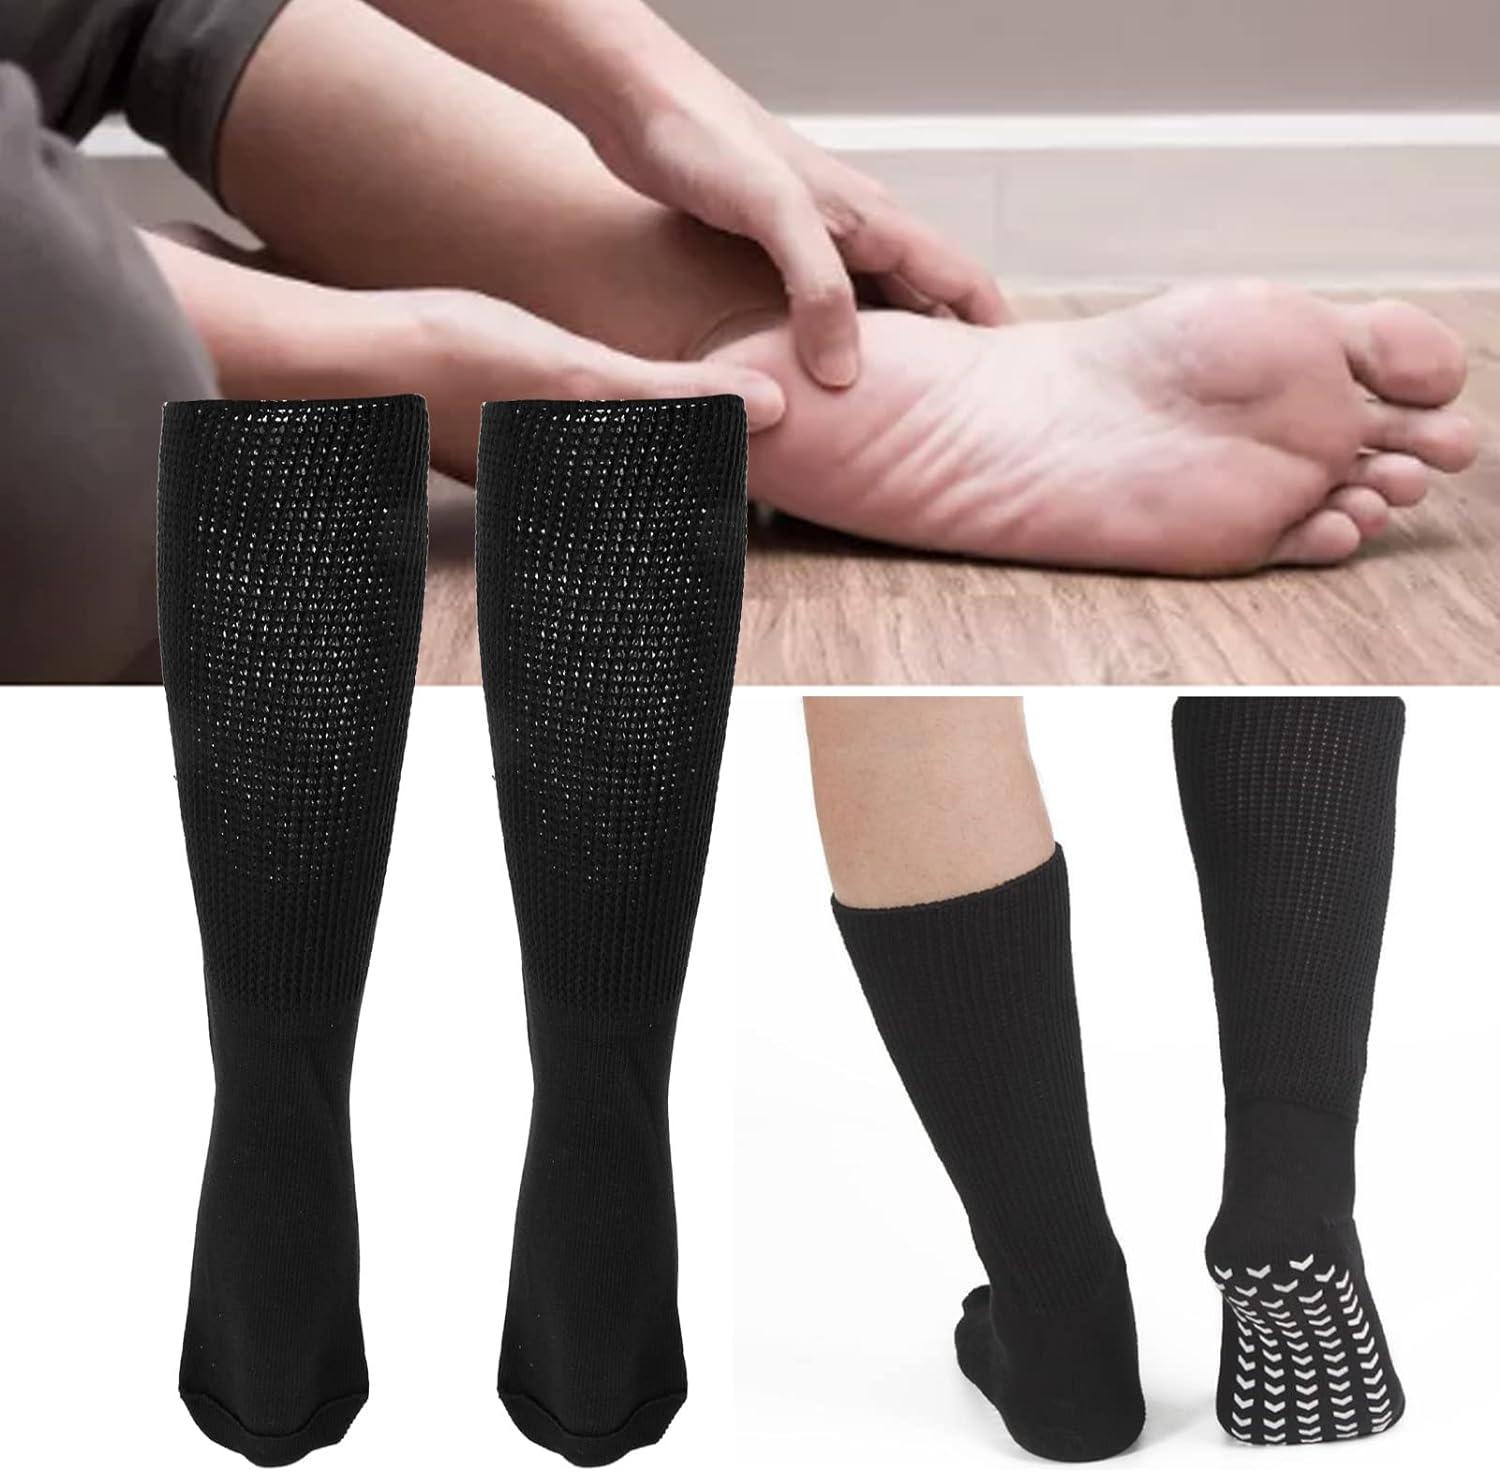 Bariatric Socks - Extra Wide Diabetic Socks